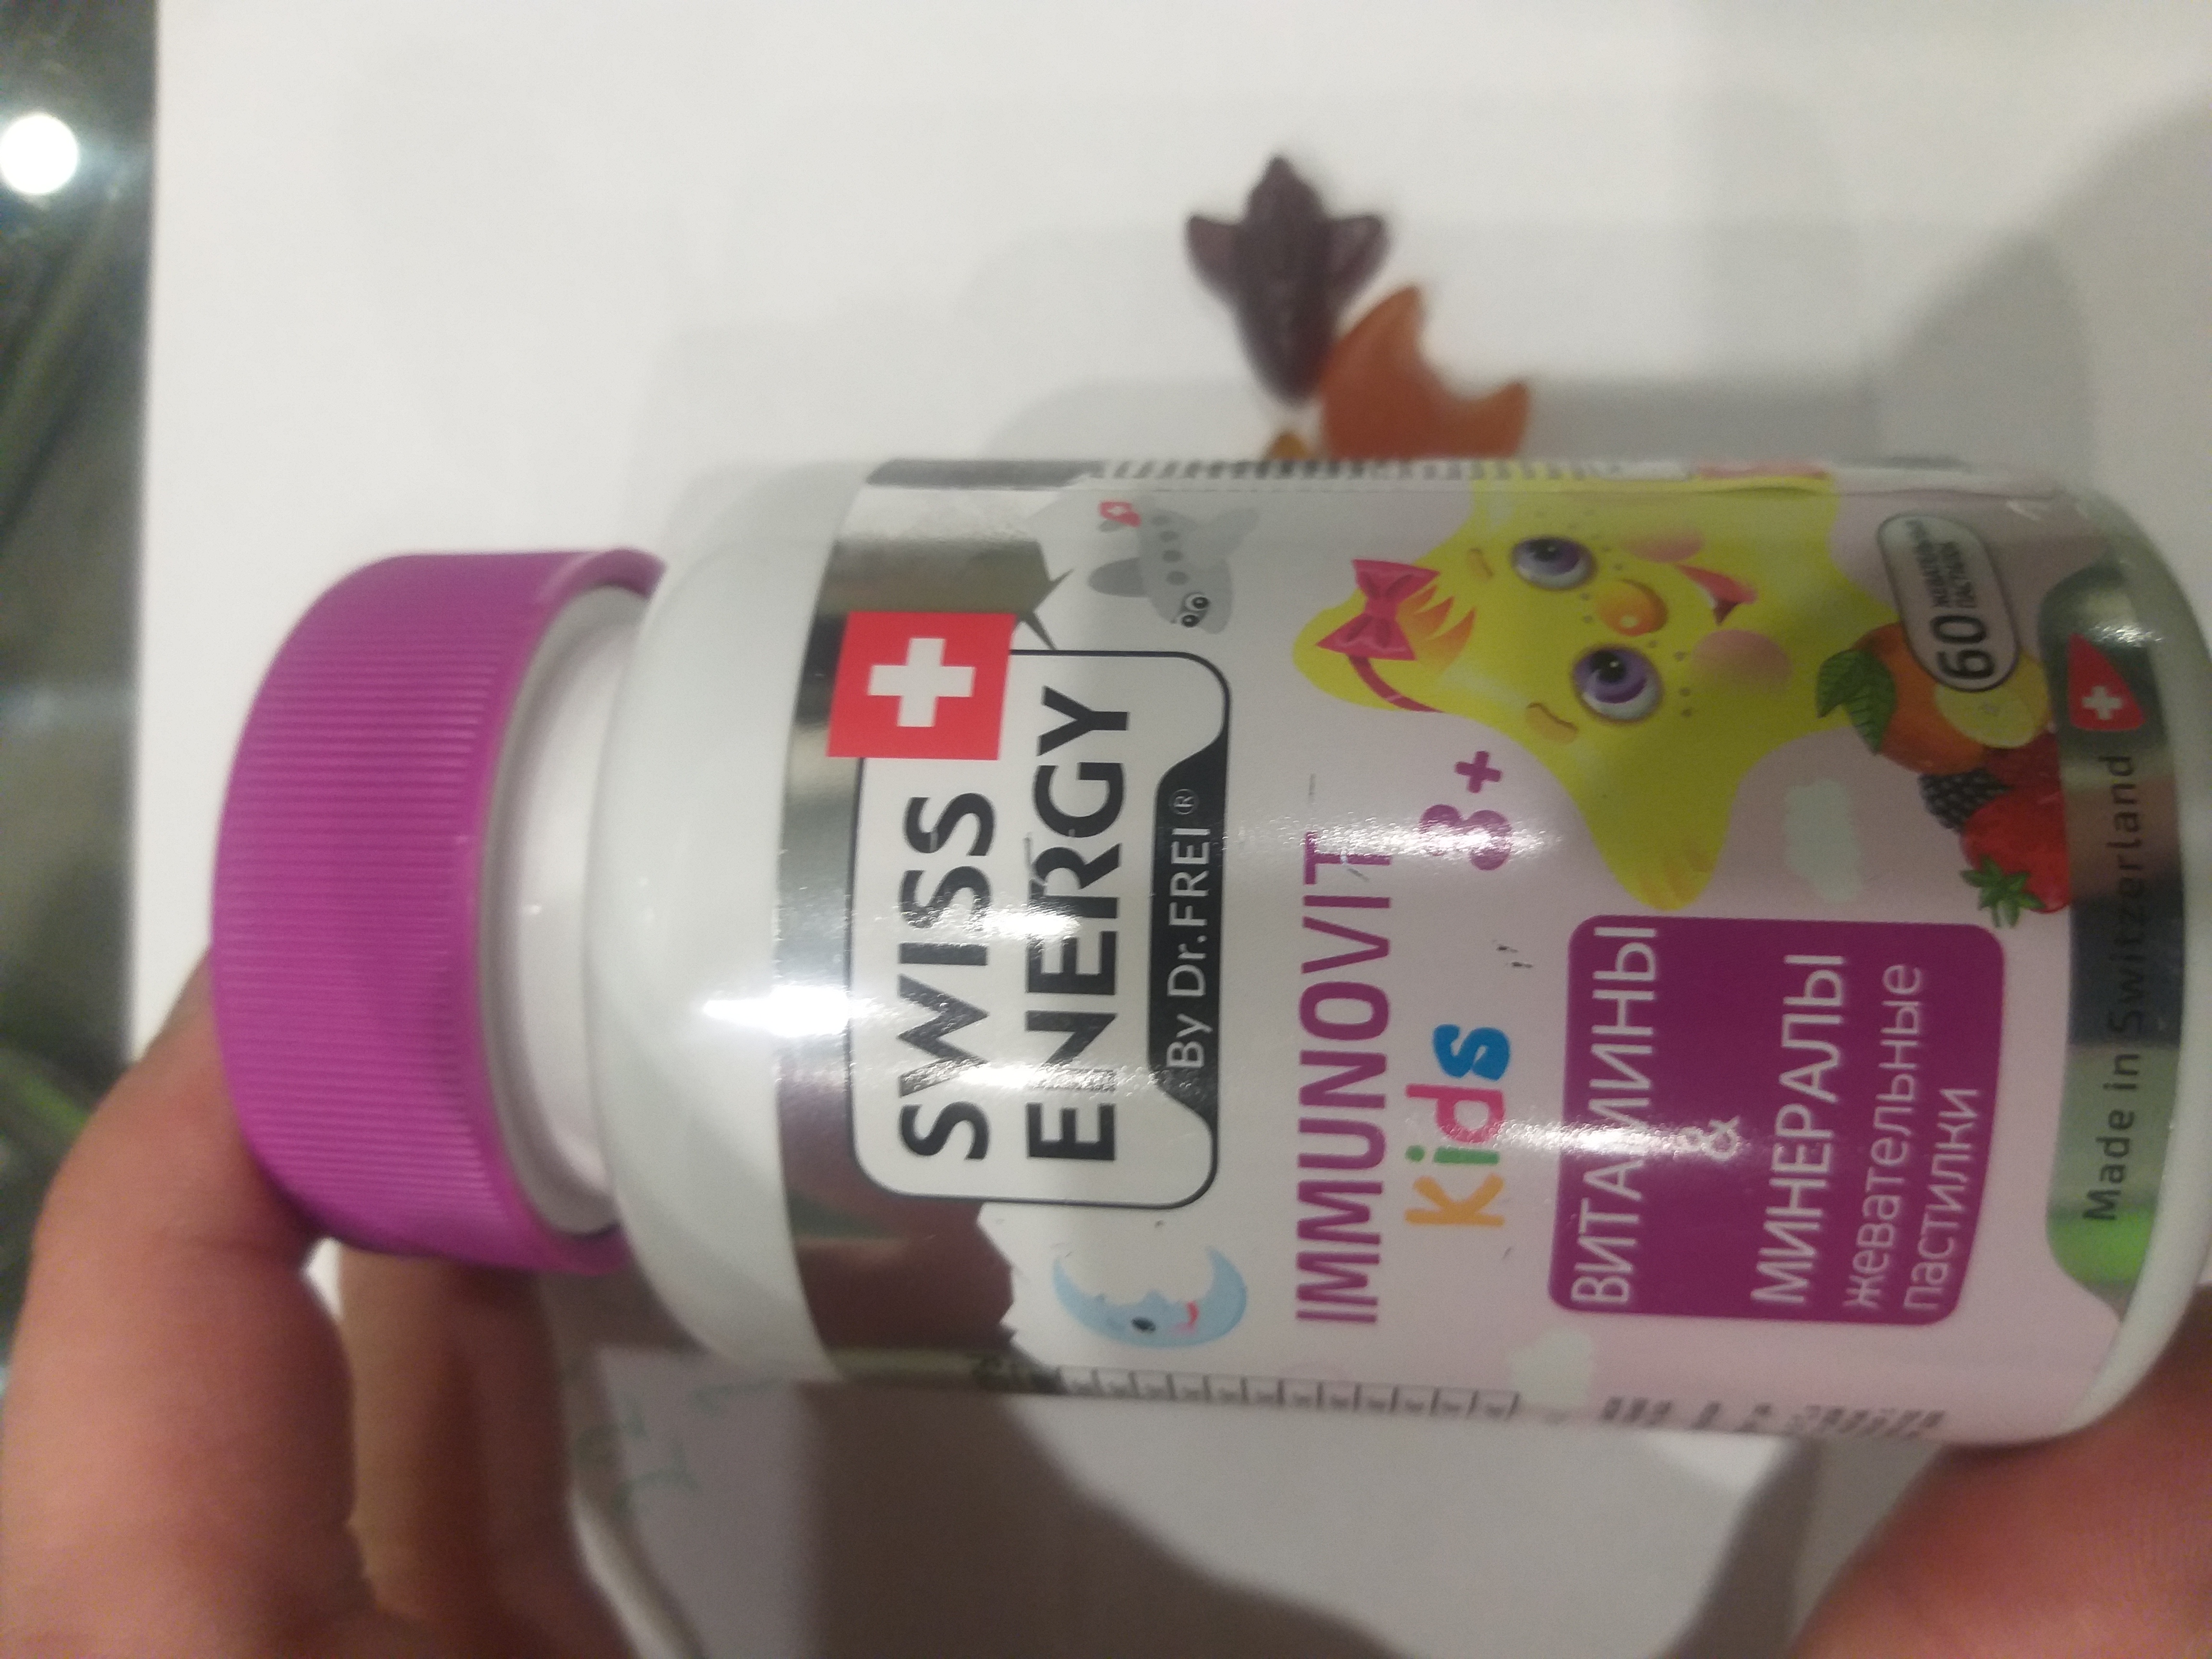 вітаміни для дітей смачні та корисні (Swiss Energy Immunovit)